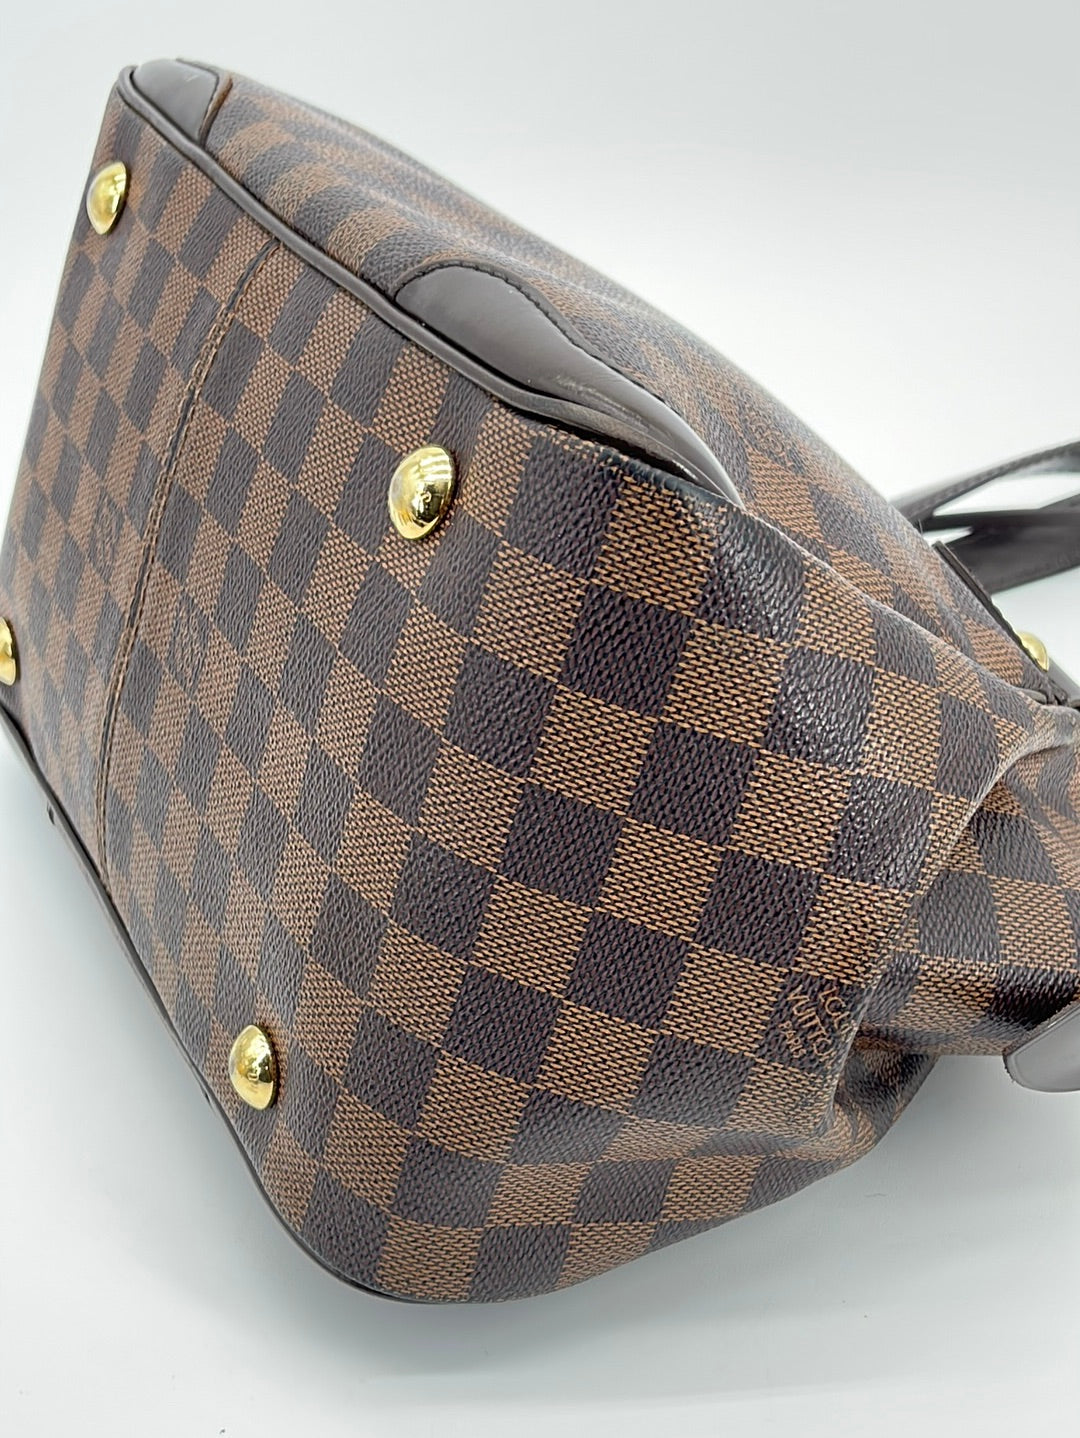 Louis-Vuitton-Damier-Ebene-Verona-PM-Hand-Bag-Brown-N41117 – dct